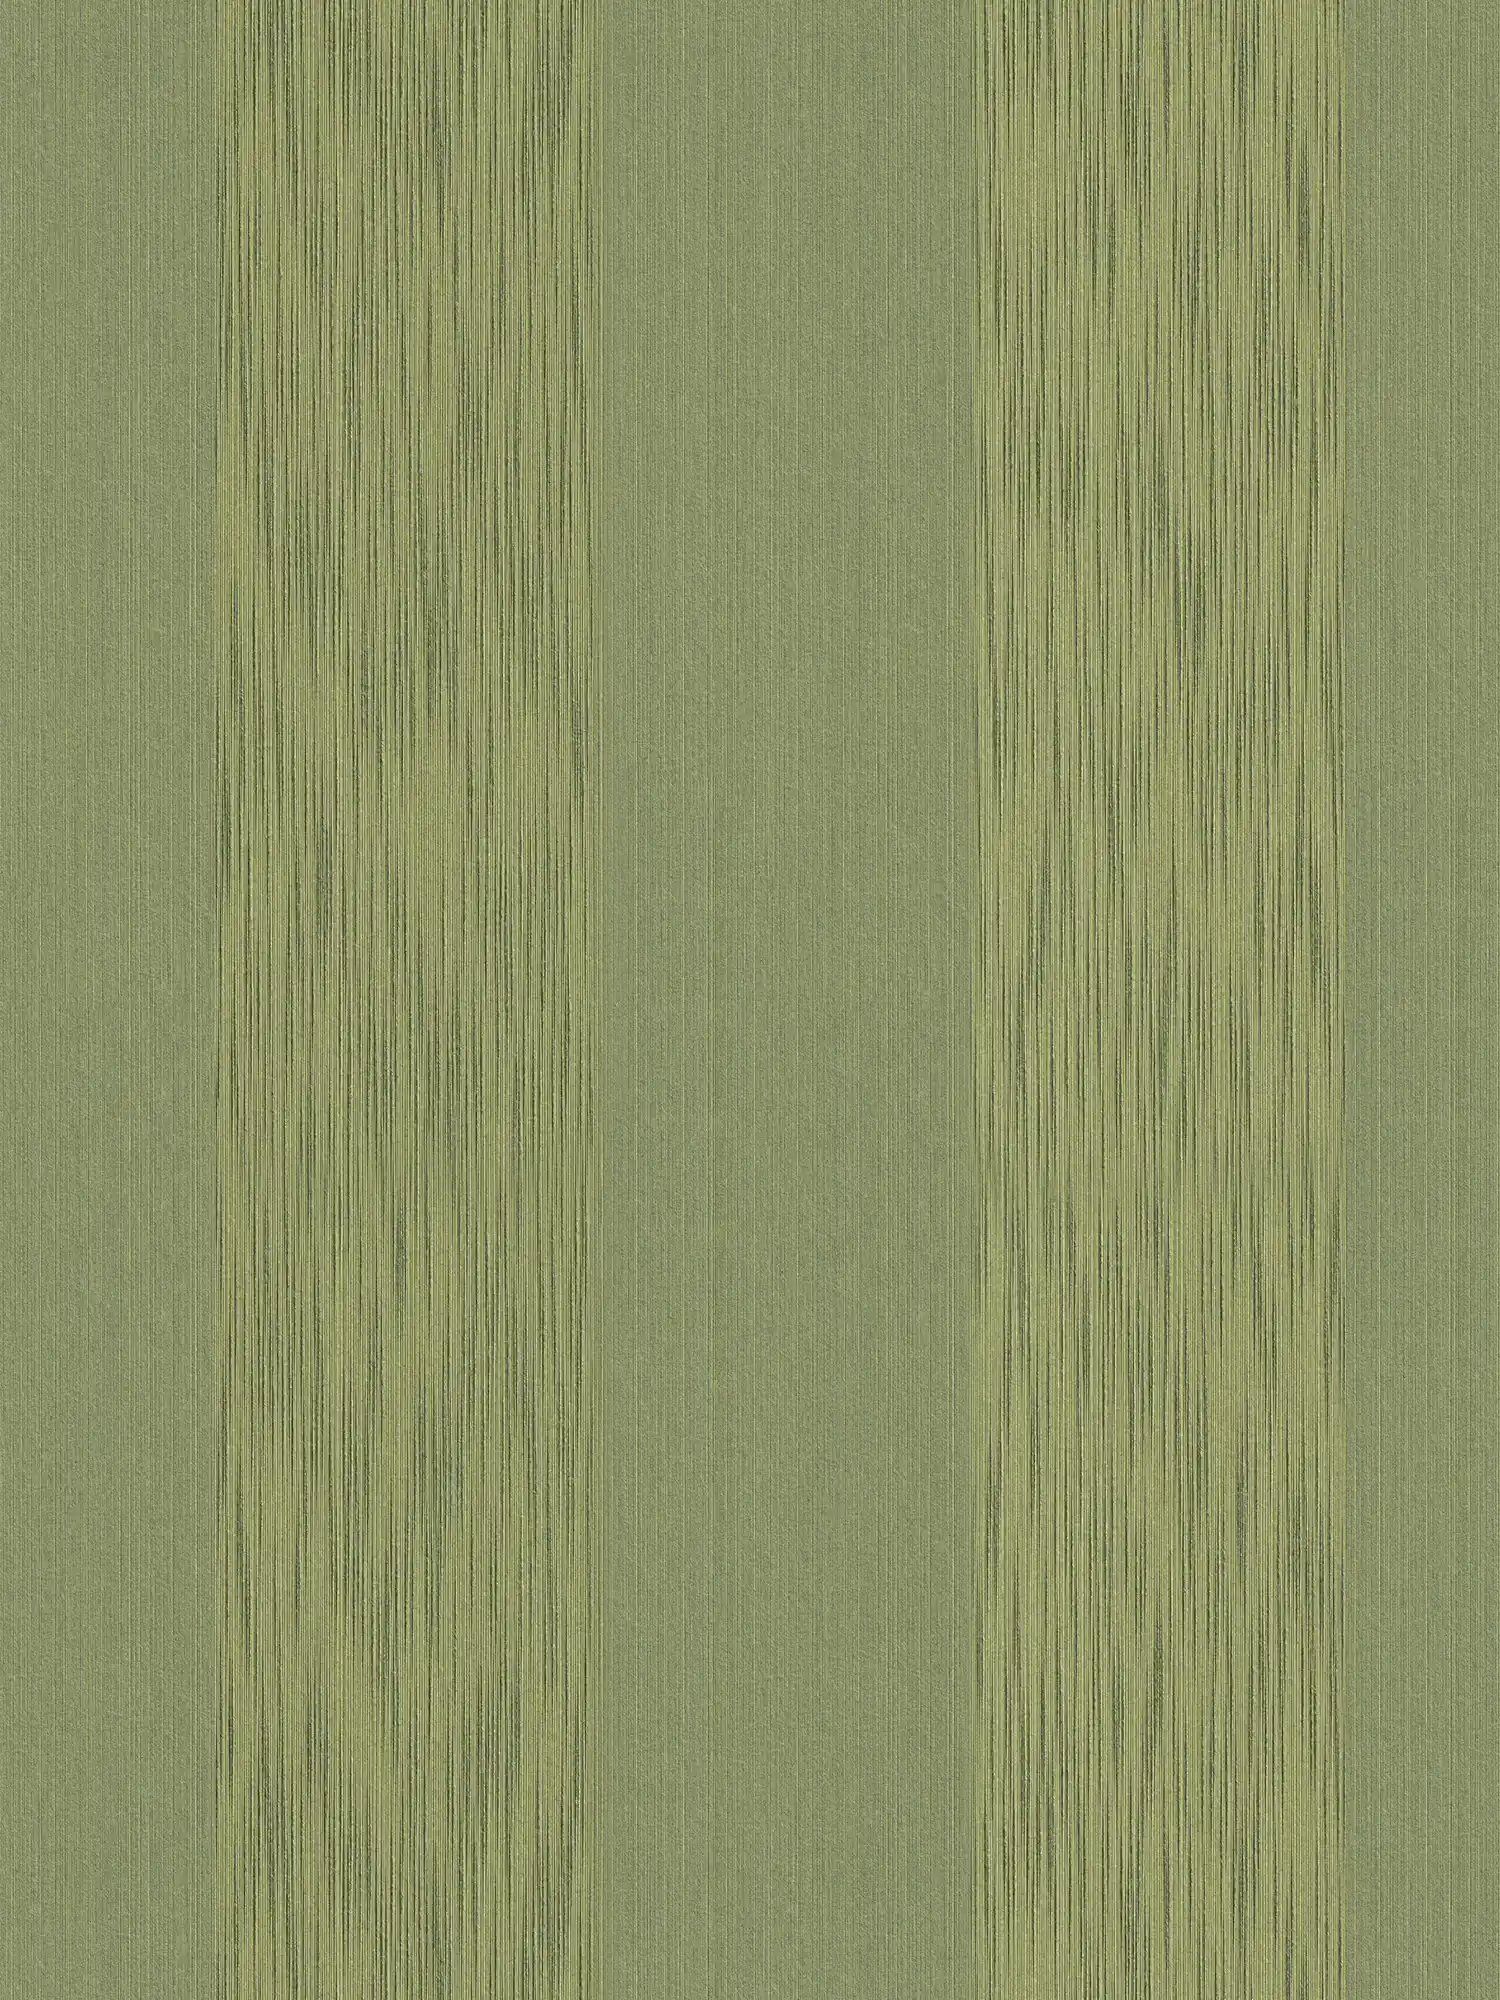 Papel pintado texturizado con efecto metálico y diseño de rayas - verde
